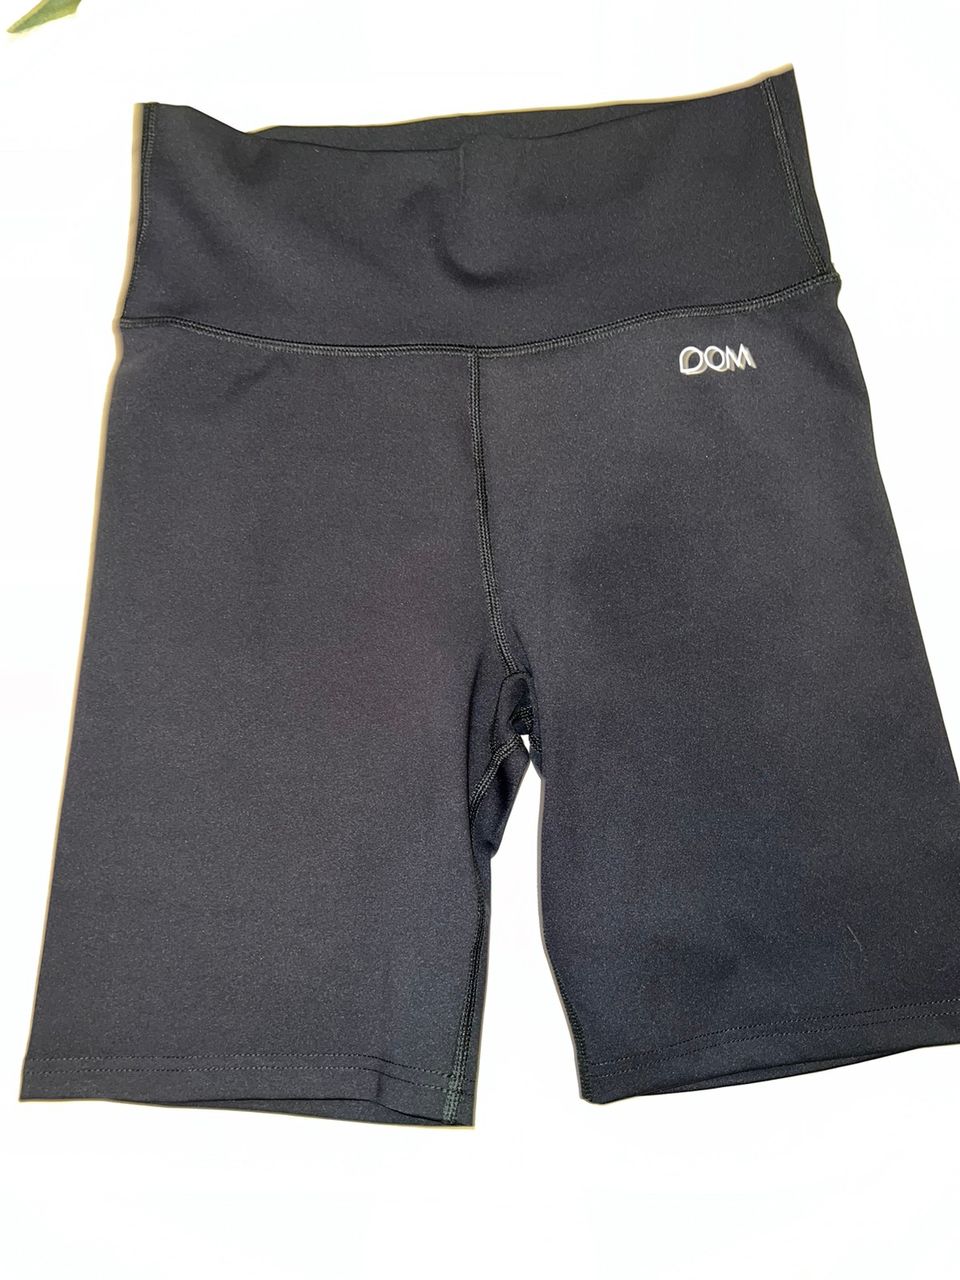 Dom lola shorts